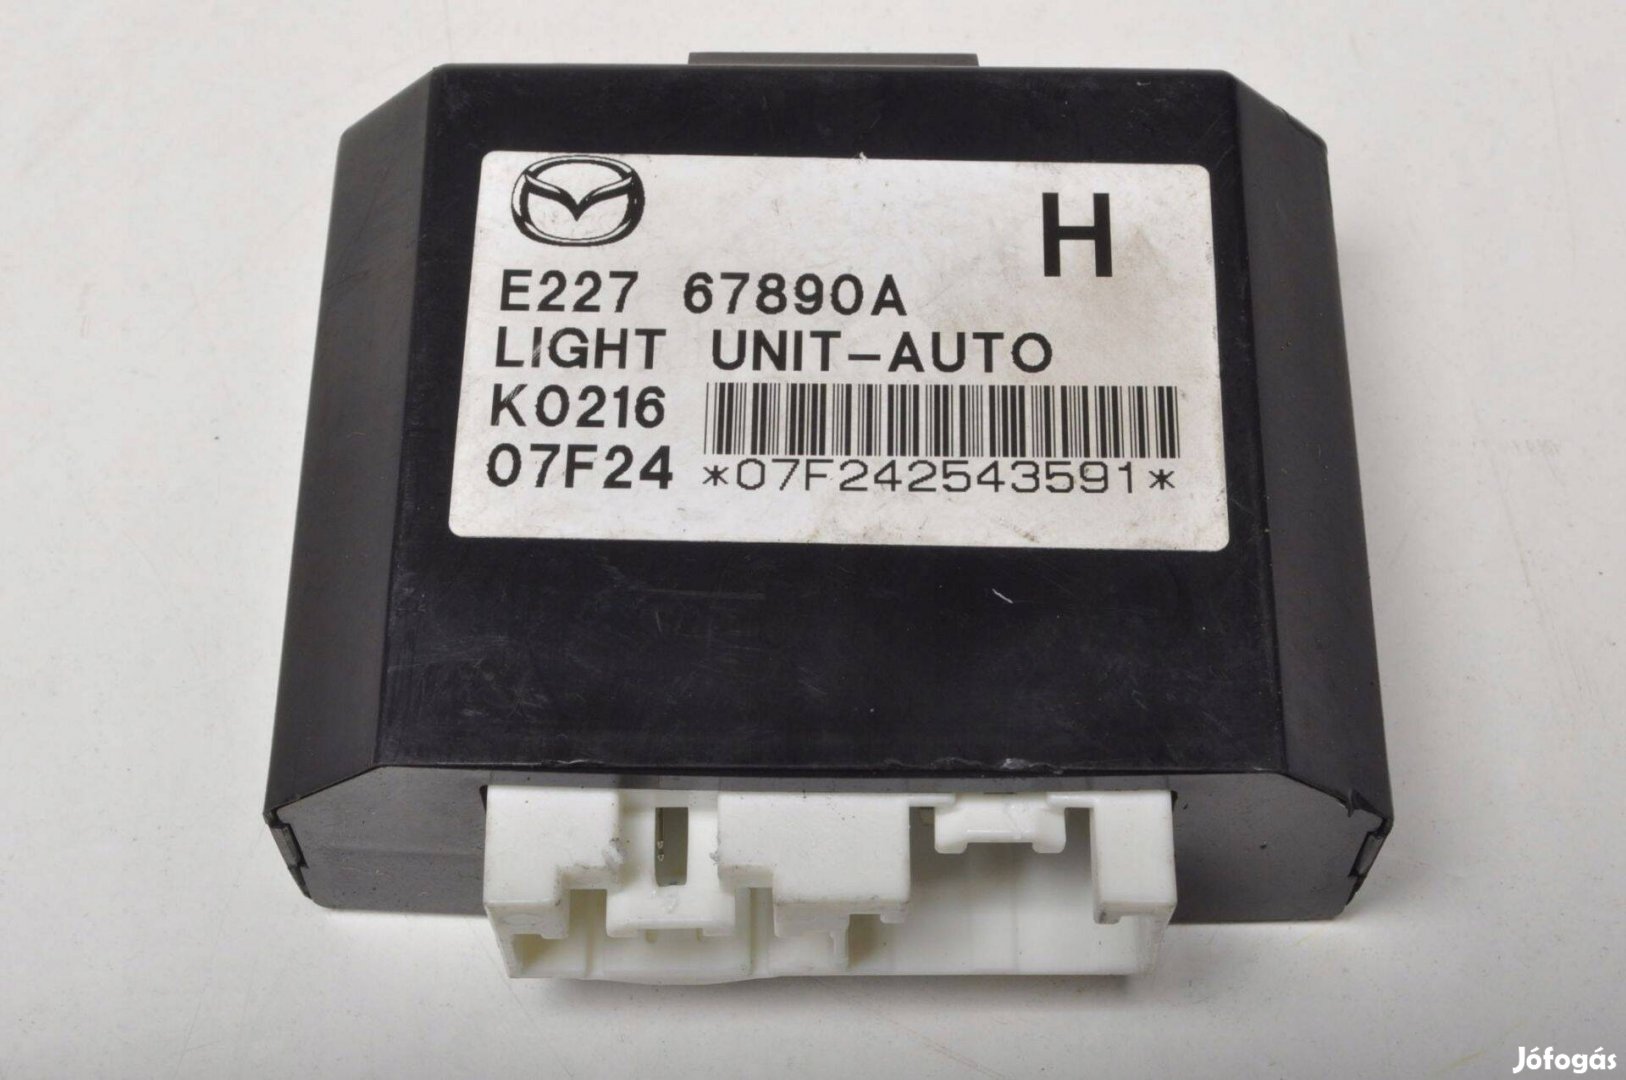 Mazda CX-7 világítás vezérlő elektronika E22767890A